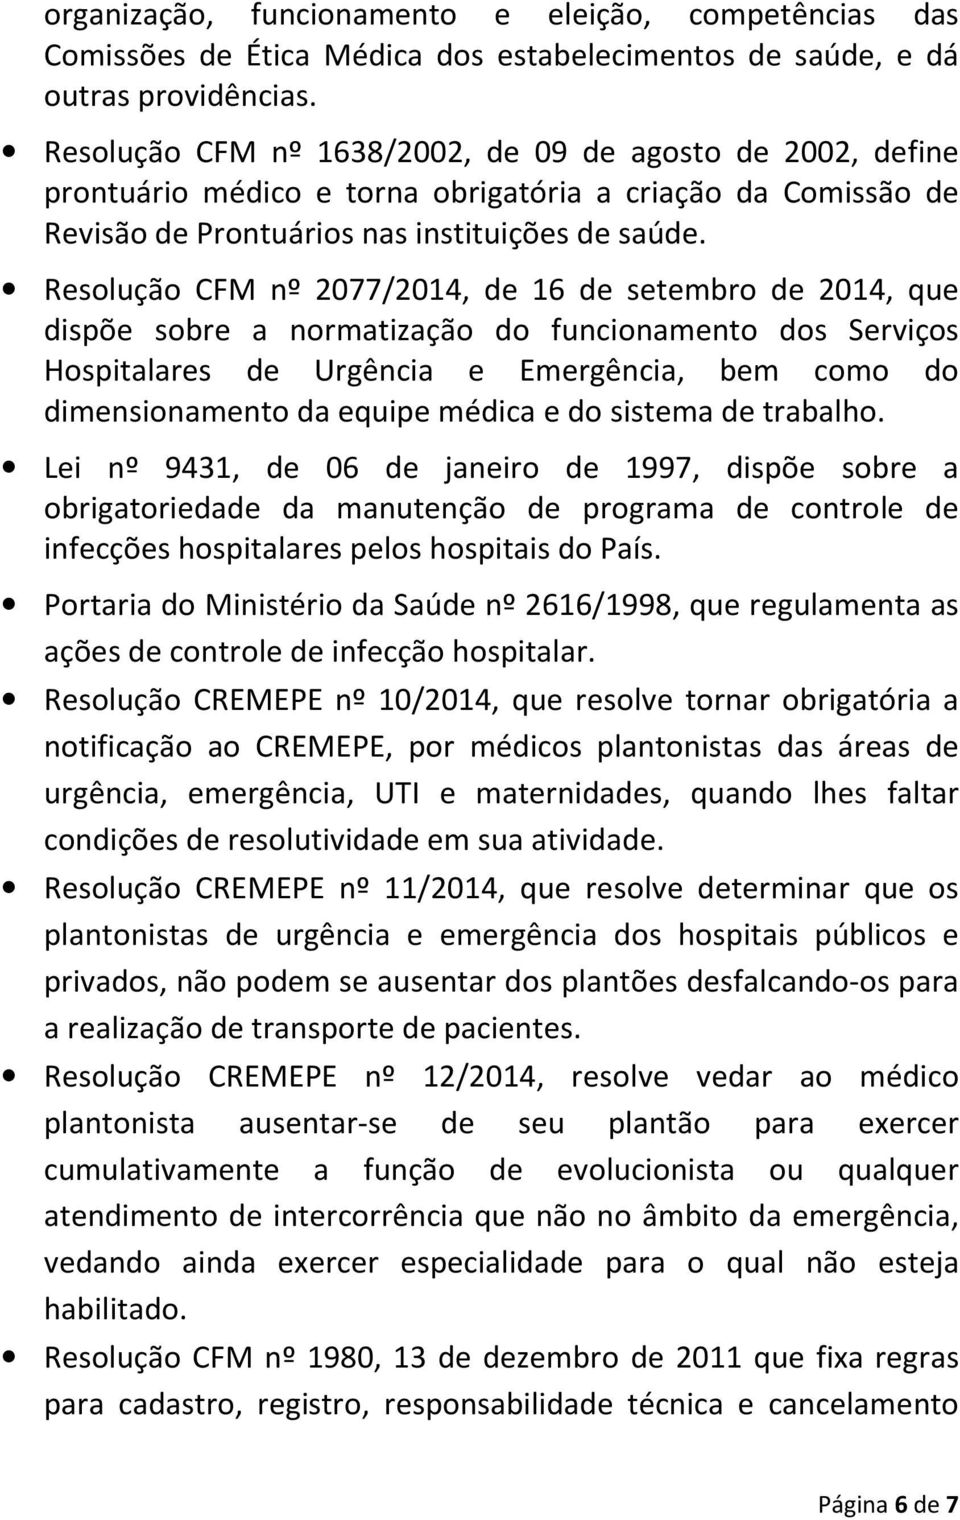 Resolução CFM nº 2077/2014, de 16 de setembro de 2014, que dispõe sobre a normatização do funcionamento dos Serviços Hospitalares de Urgência e Emergência, bem como do dimensionamento da equipe